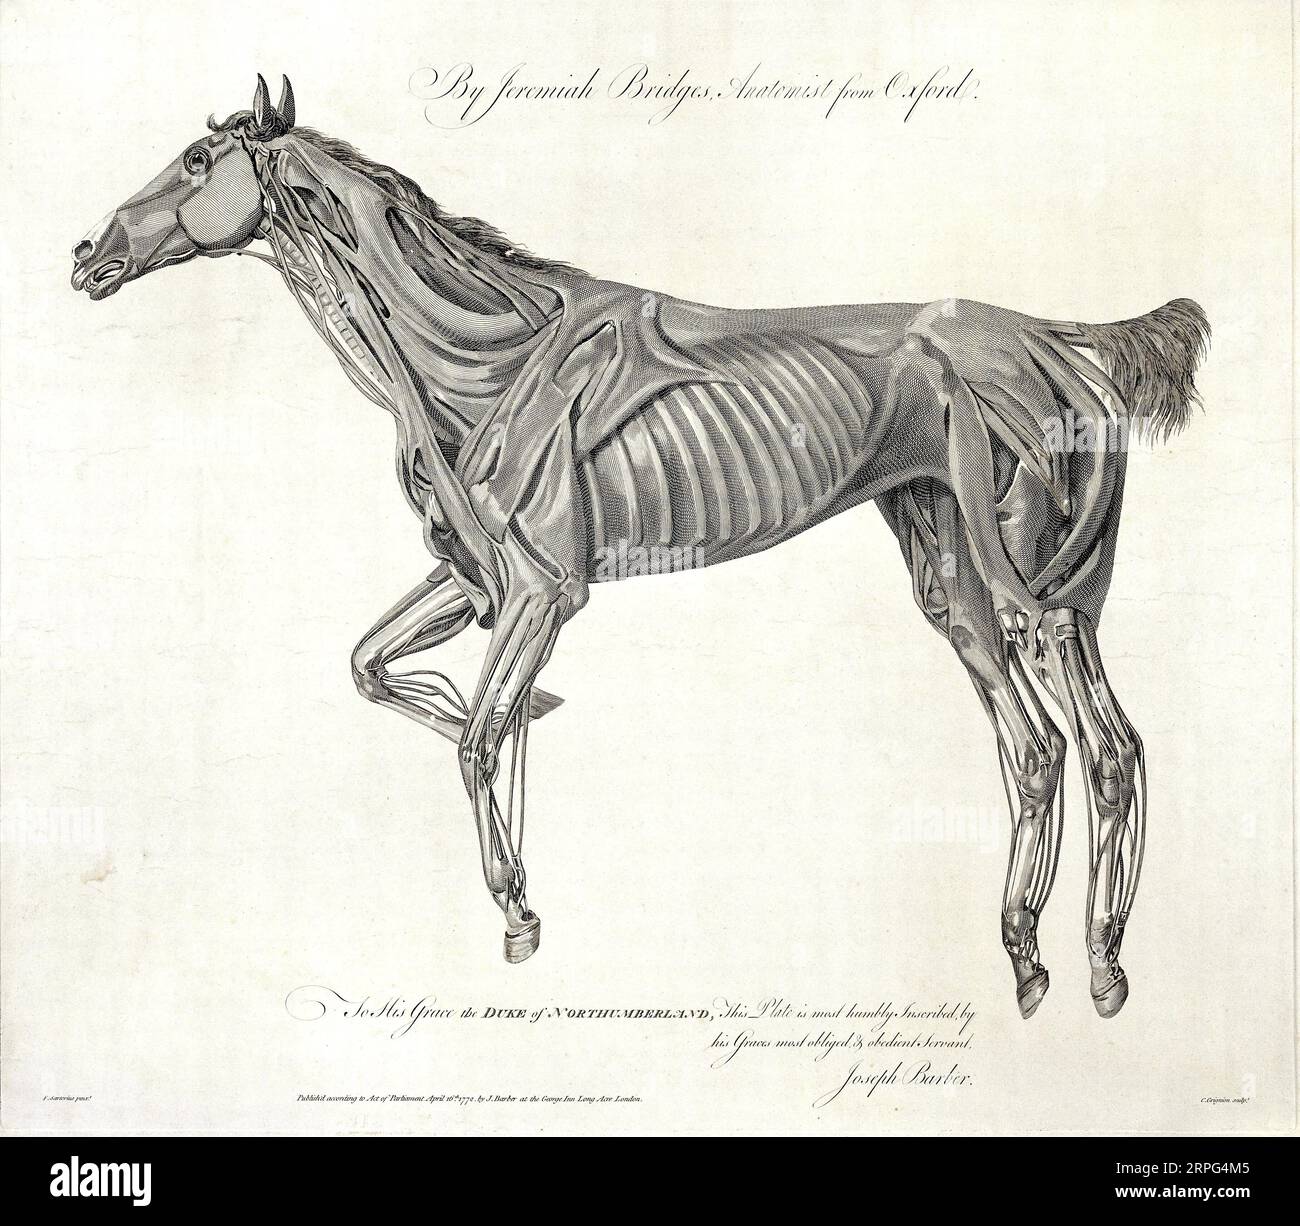 Músculos del caballo, grabado por C. Grignion después de F. Sartorio para Jeremías Puentes 1772 Foto de stock